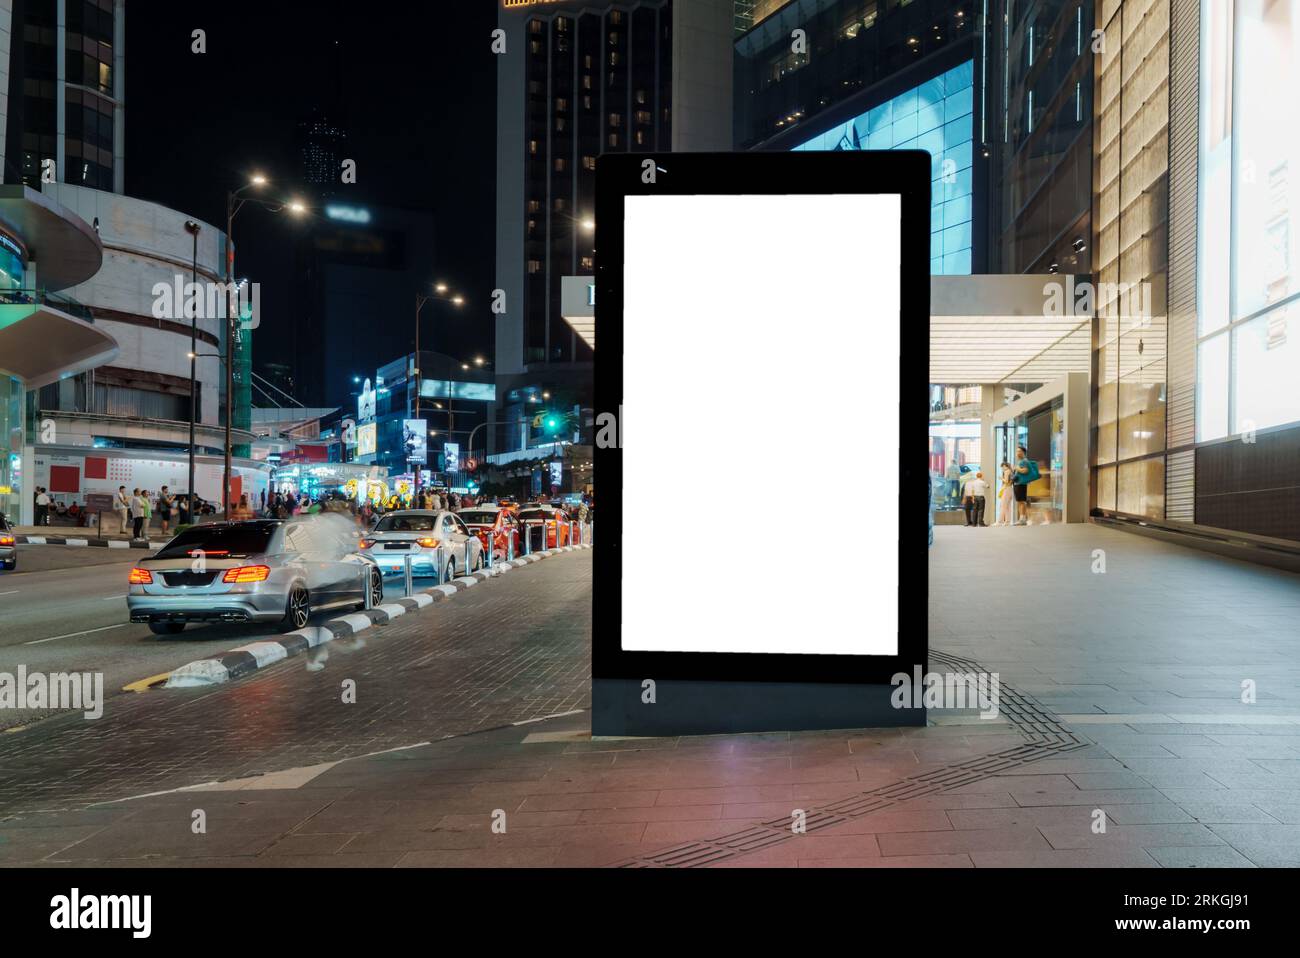 Un ampio cartellone bianco, nascosto nel cuore della città, attende il tuo testo o il tuo contenuto, offrendo ampio spazio per trasmettere il tuo messaggio a un ampio pubblico. Foto Stock